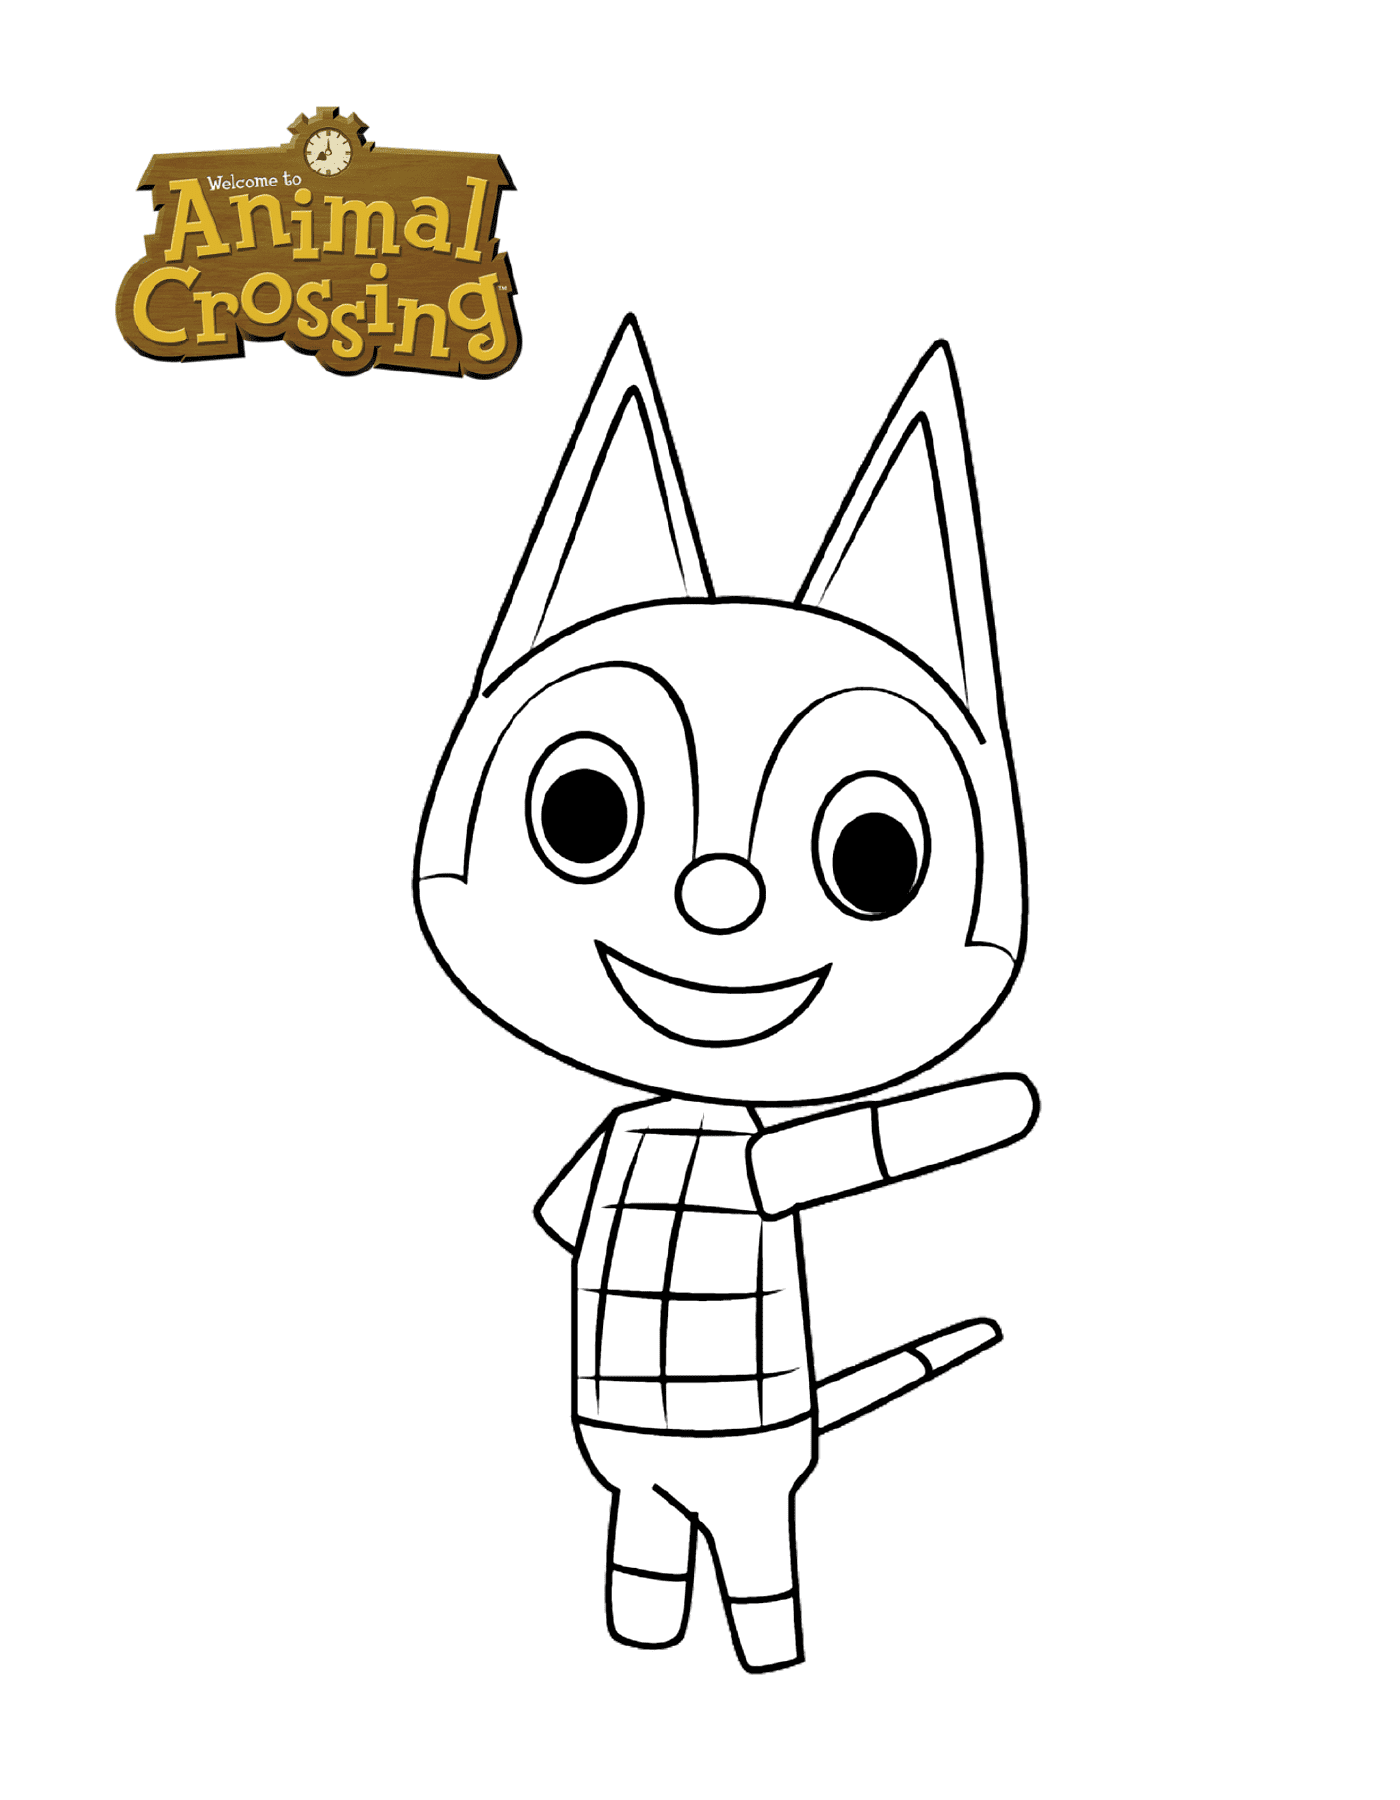  Il gatto di Rudy's Animal Crossing 